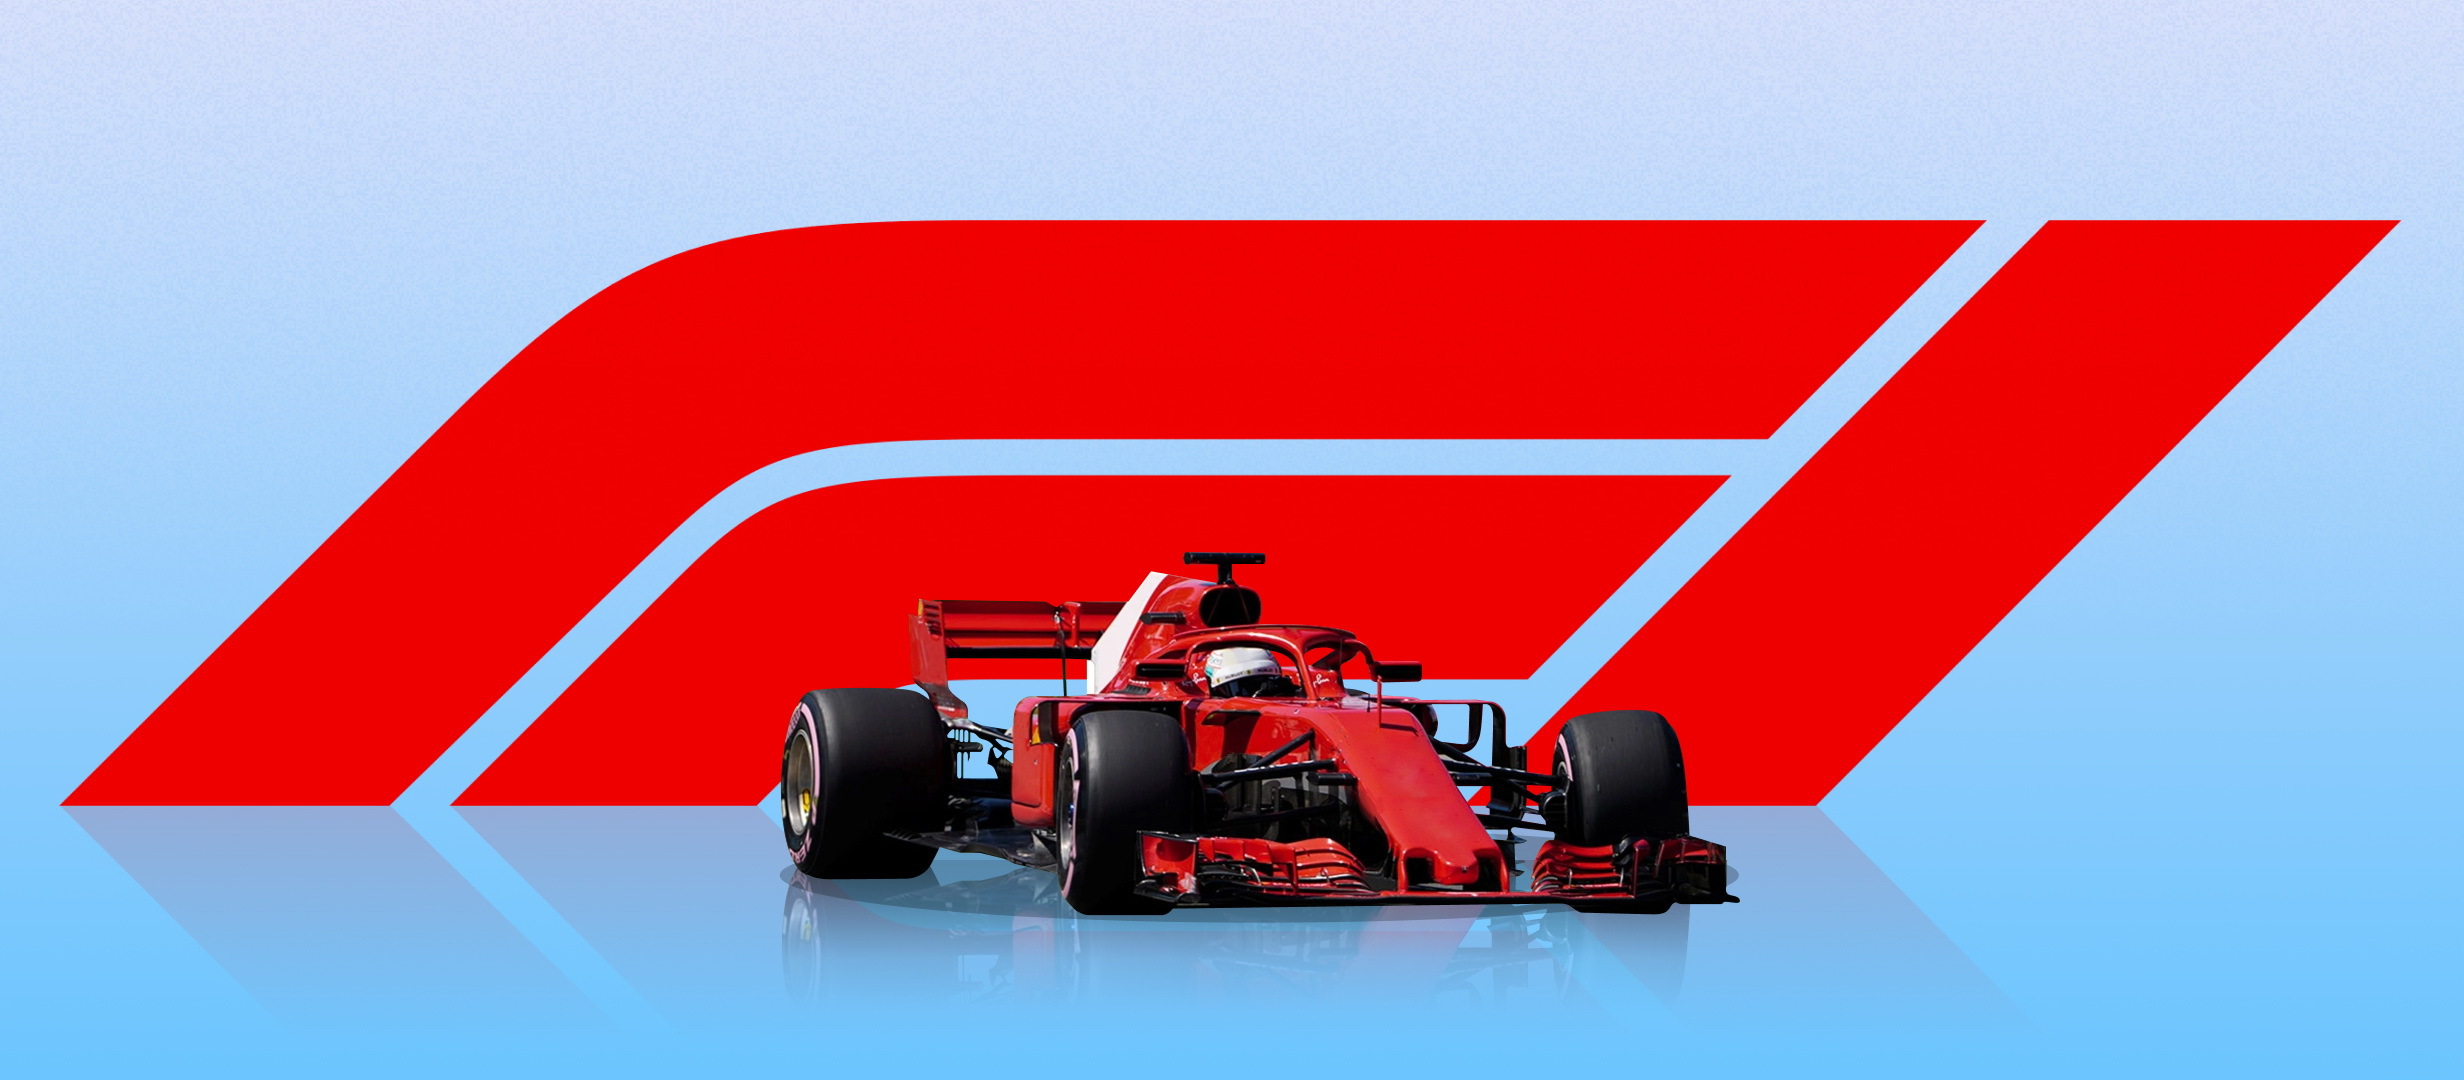 Incepe un nou sezon de Formula 1, cu un numar mai mare de curse decat anul trecut